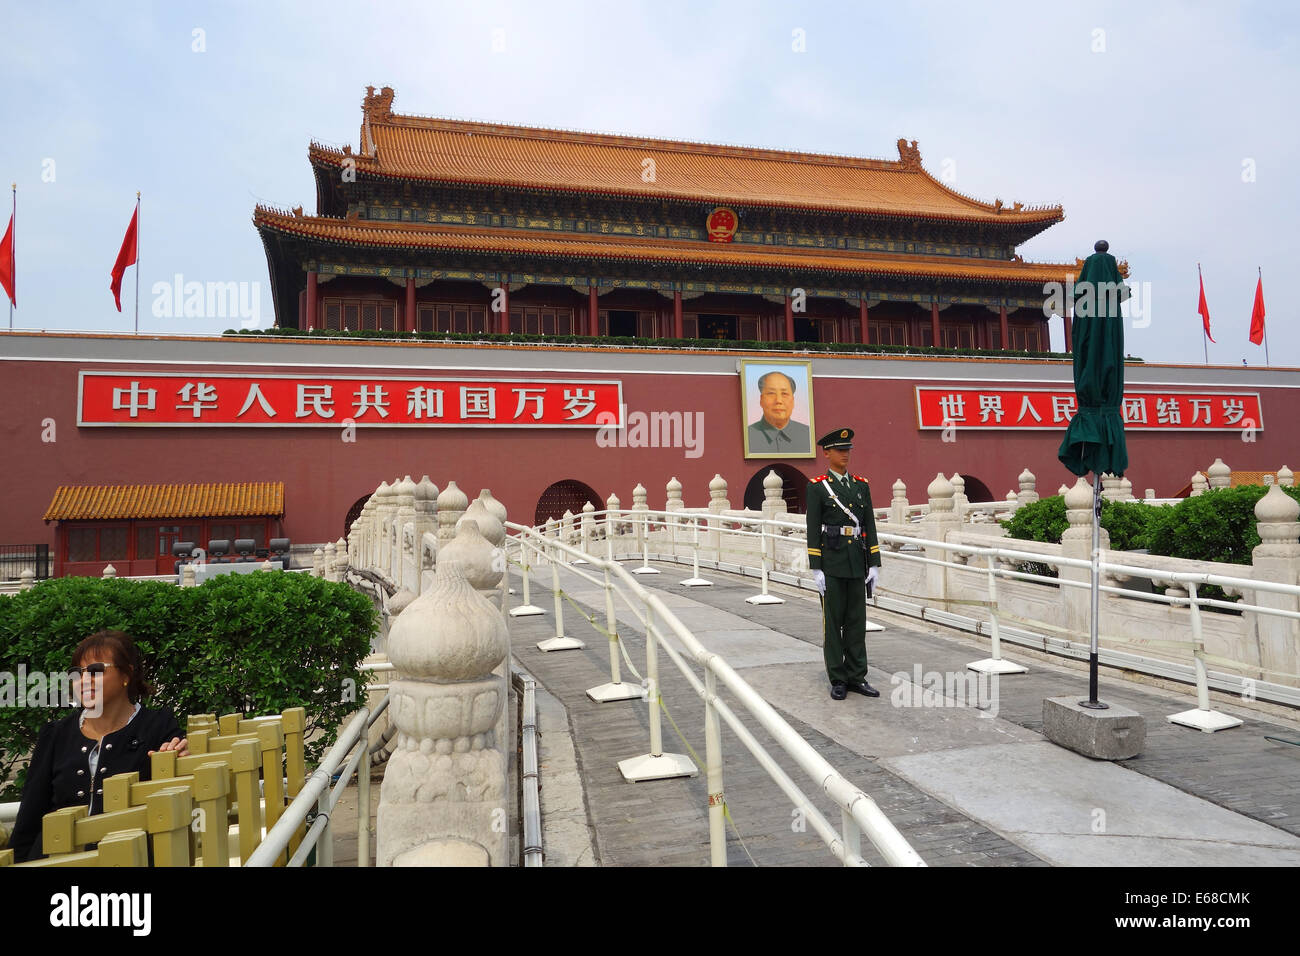 Verbotene Stadt, Porträt des Vorsitzenden Mao mit Soldat, Verbotene Stadt, Peking, Volksrepublik China, Asien Stockfoto